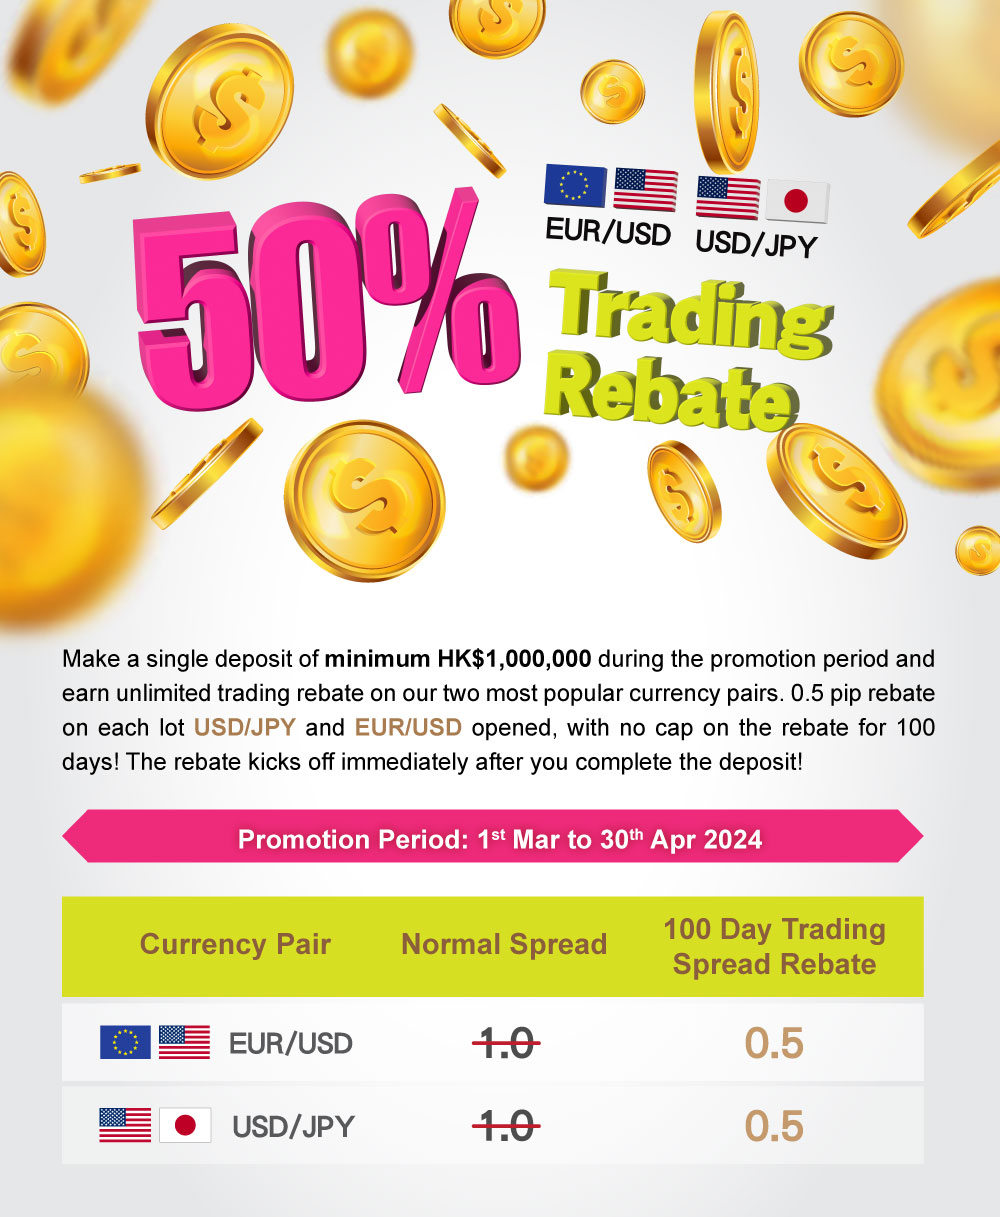 EUR/USD & USD/JPY 50% Trading Rebate